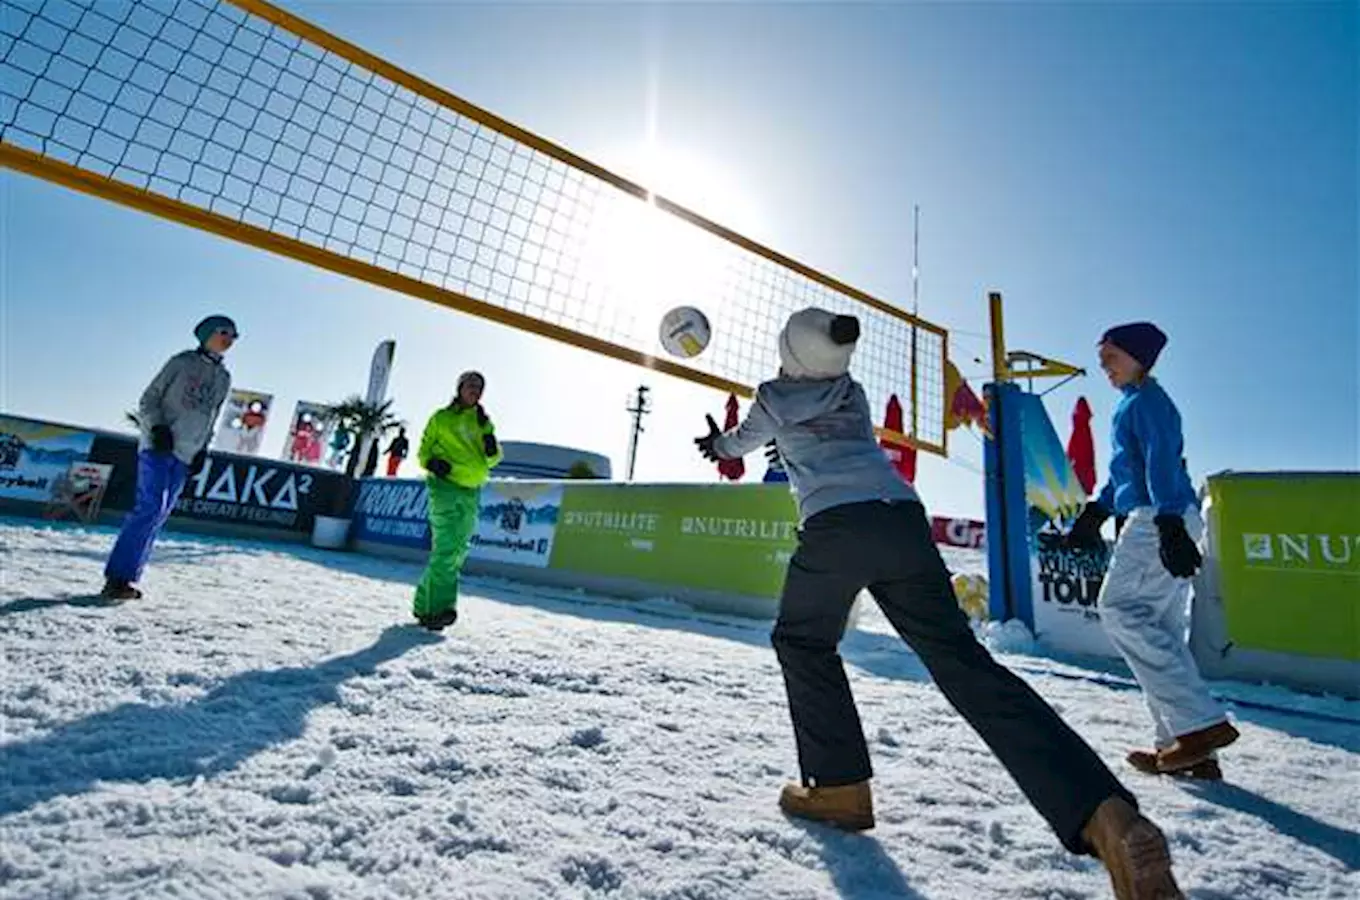 Nenechte si ujít volejbal na sněhu - Cev Snow Volleyball ve Špindlerově Mlýně